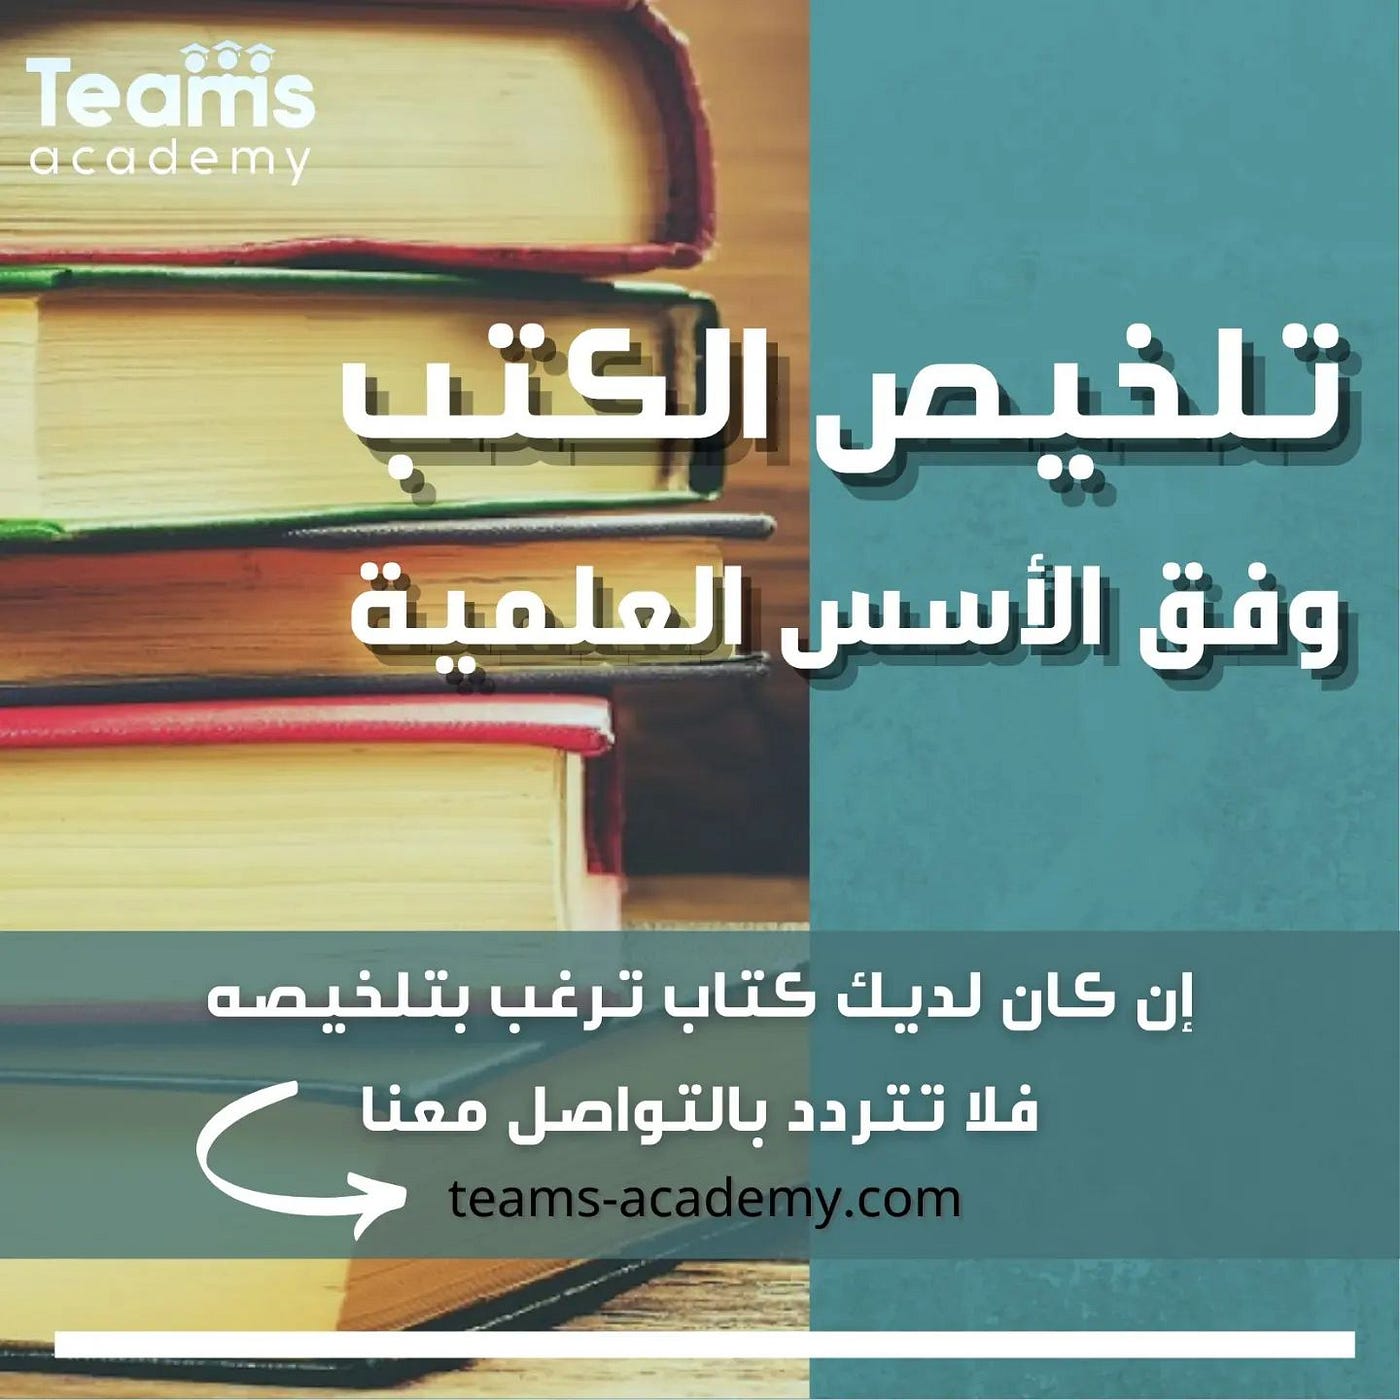 تلخيص الكتب والمراجع | by مركز تيمز التعليمي | Medium